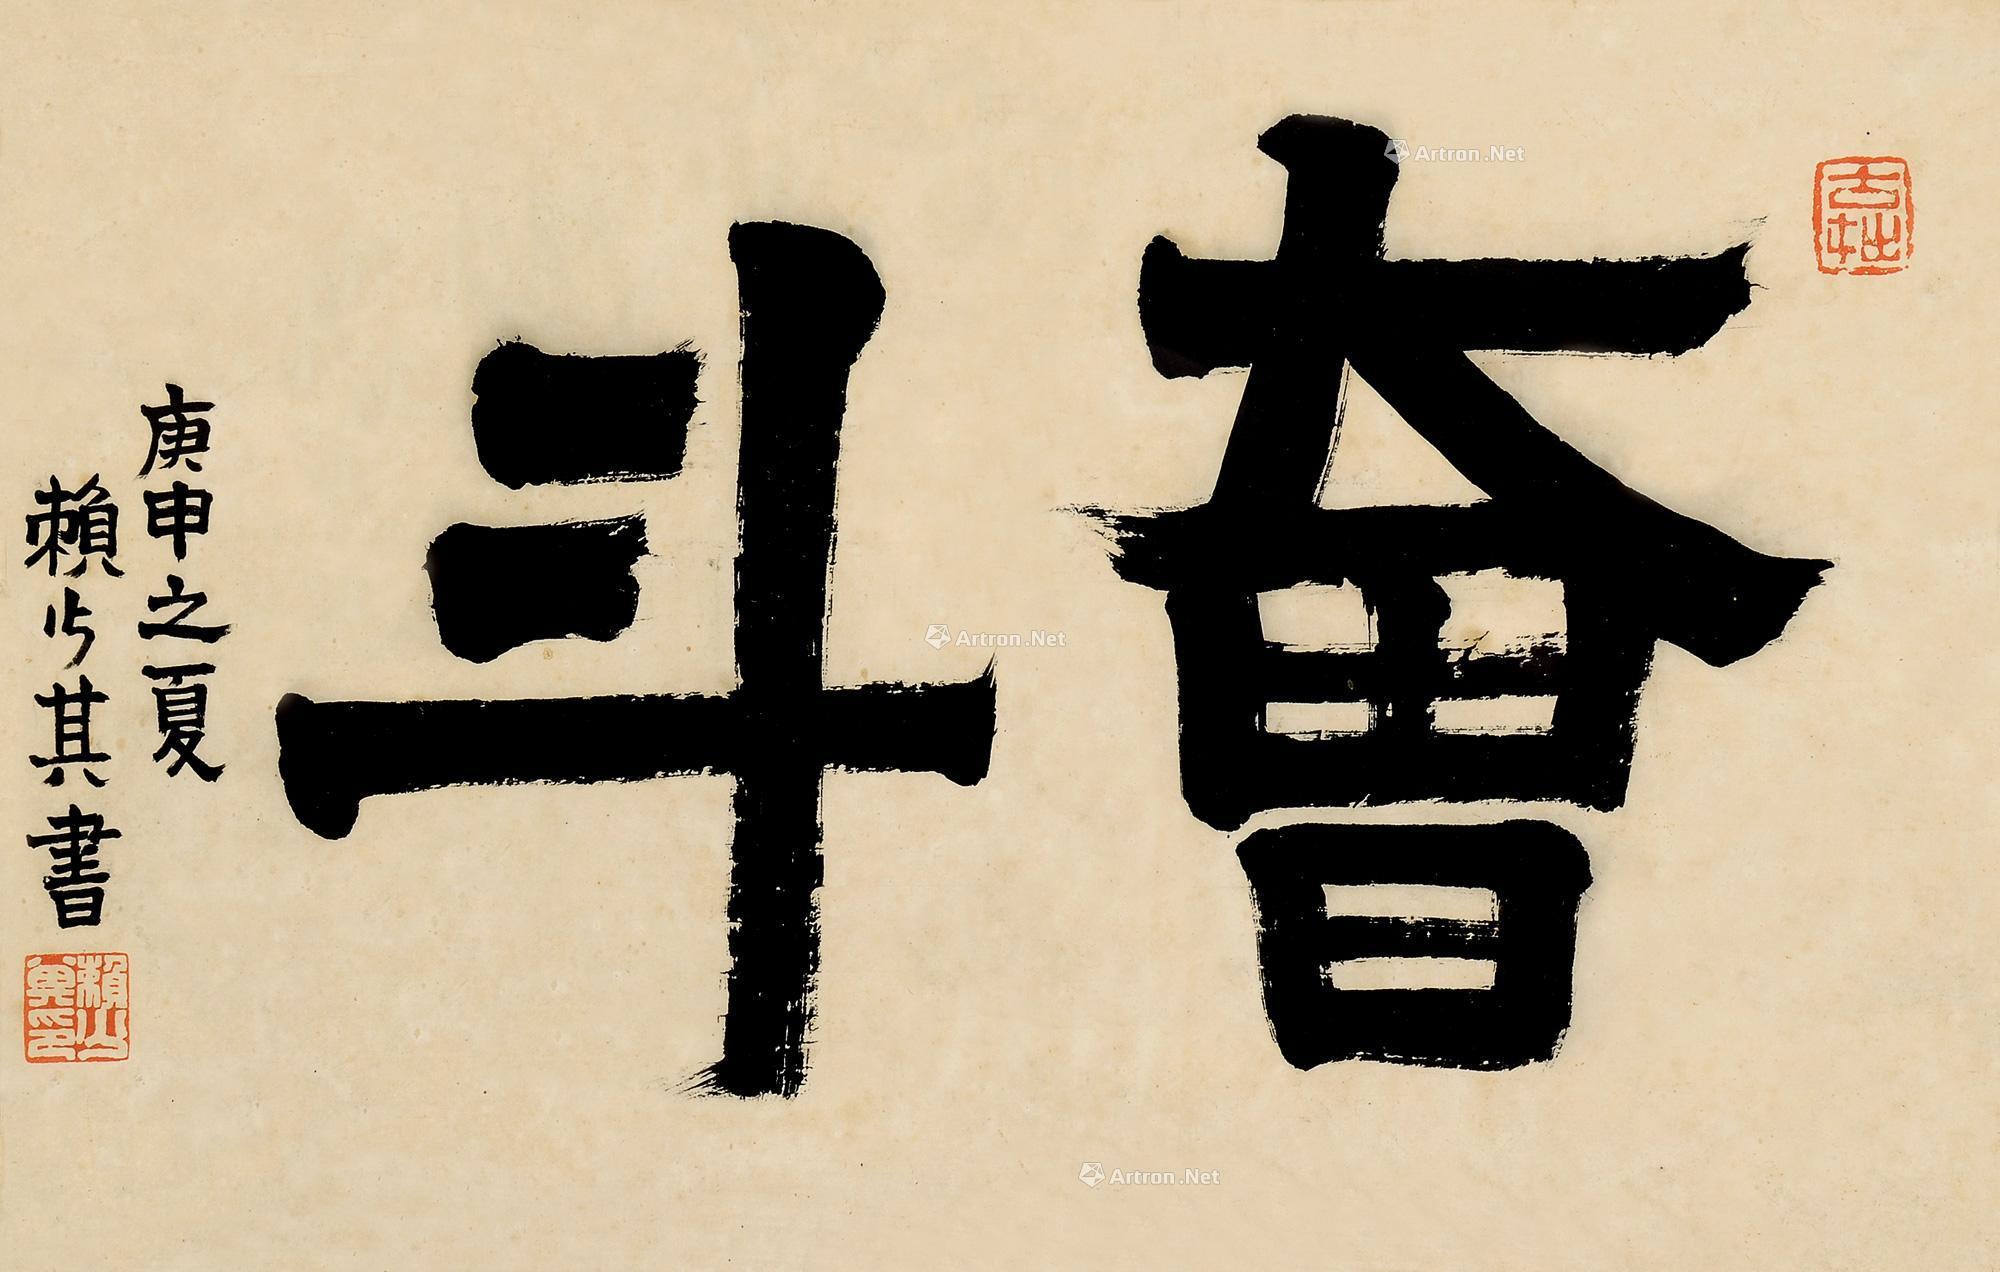 隶书奋斗 镜框作者赖少其 (1915～2000)拍品分类中国书画